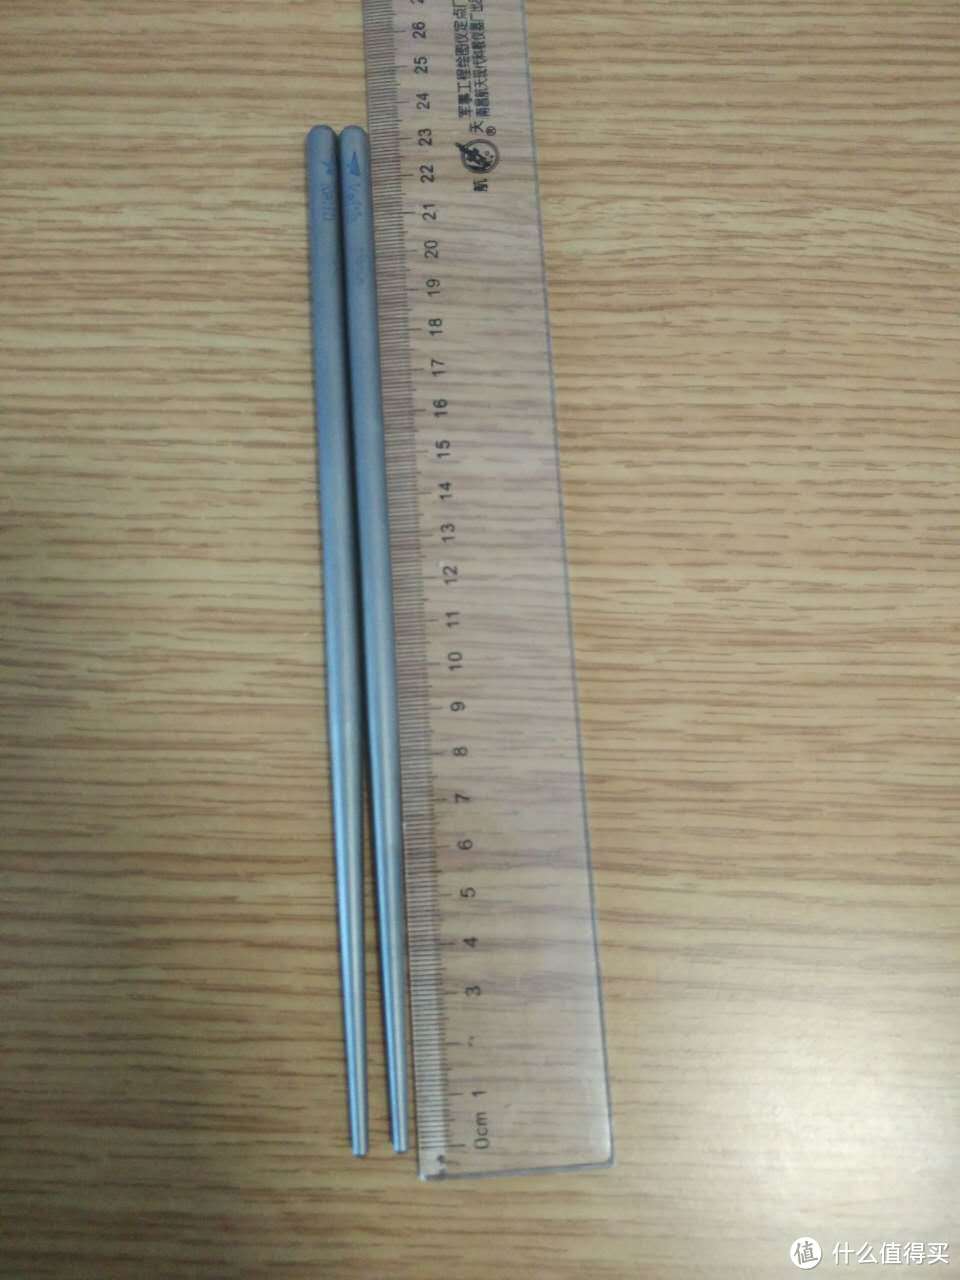 铠斯钛筷也是23厘米左右